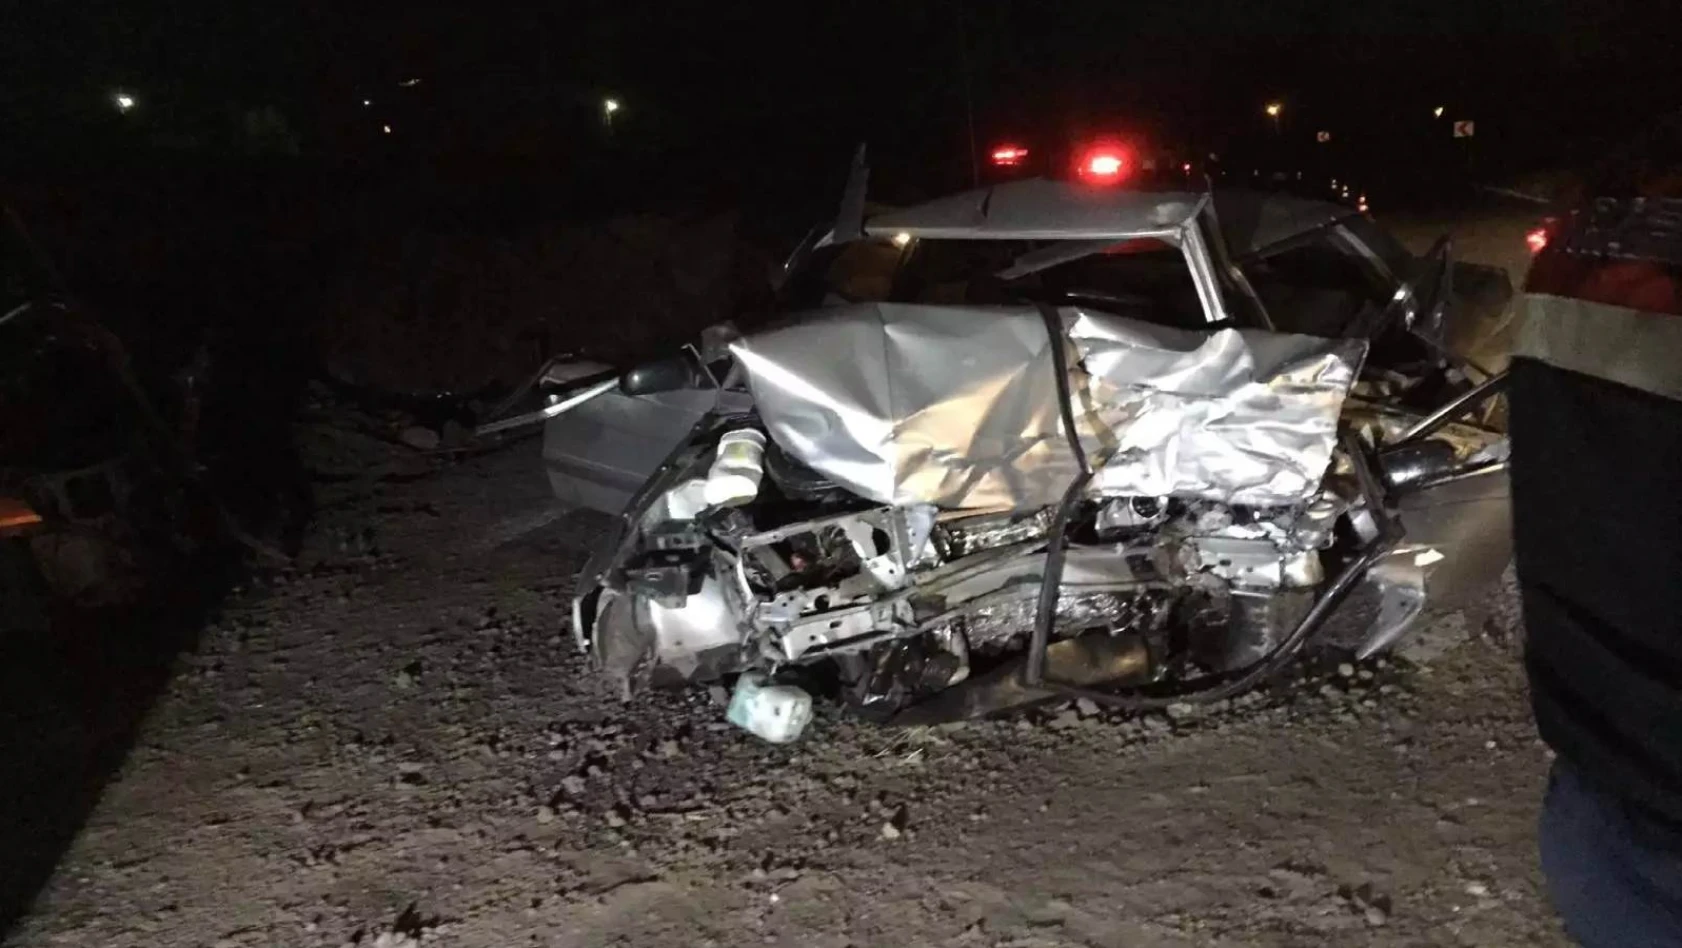 Yahyalı'da trafik kazası: 1 ölü 4 yaralı 